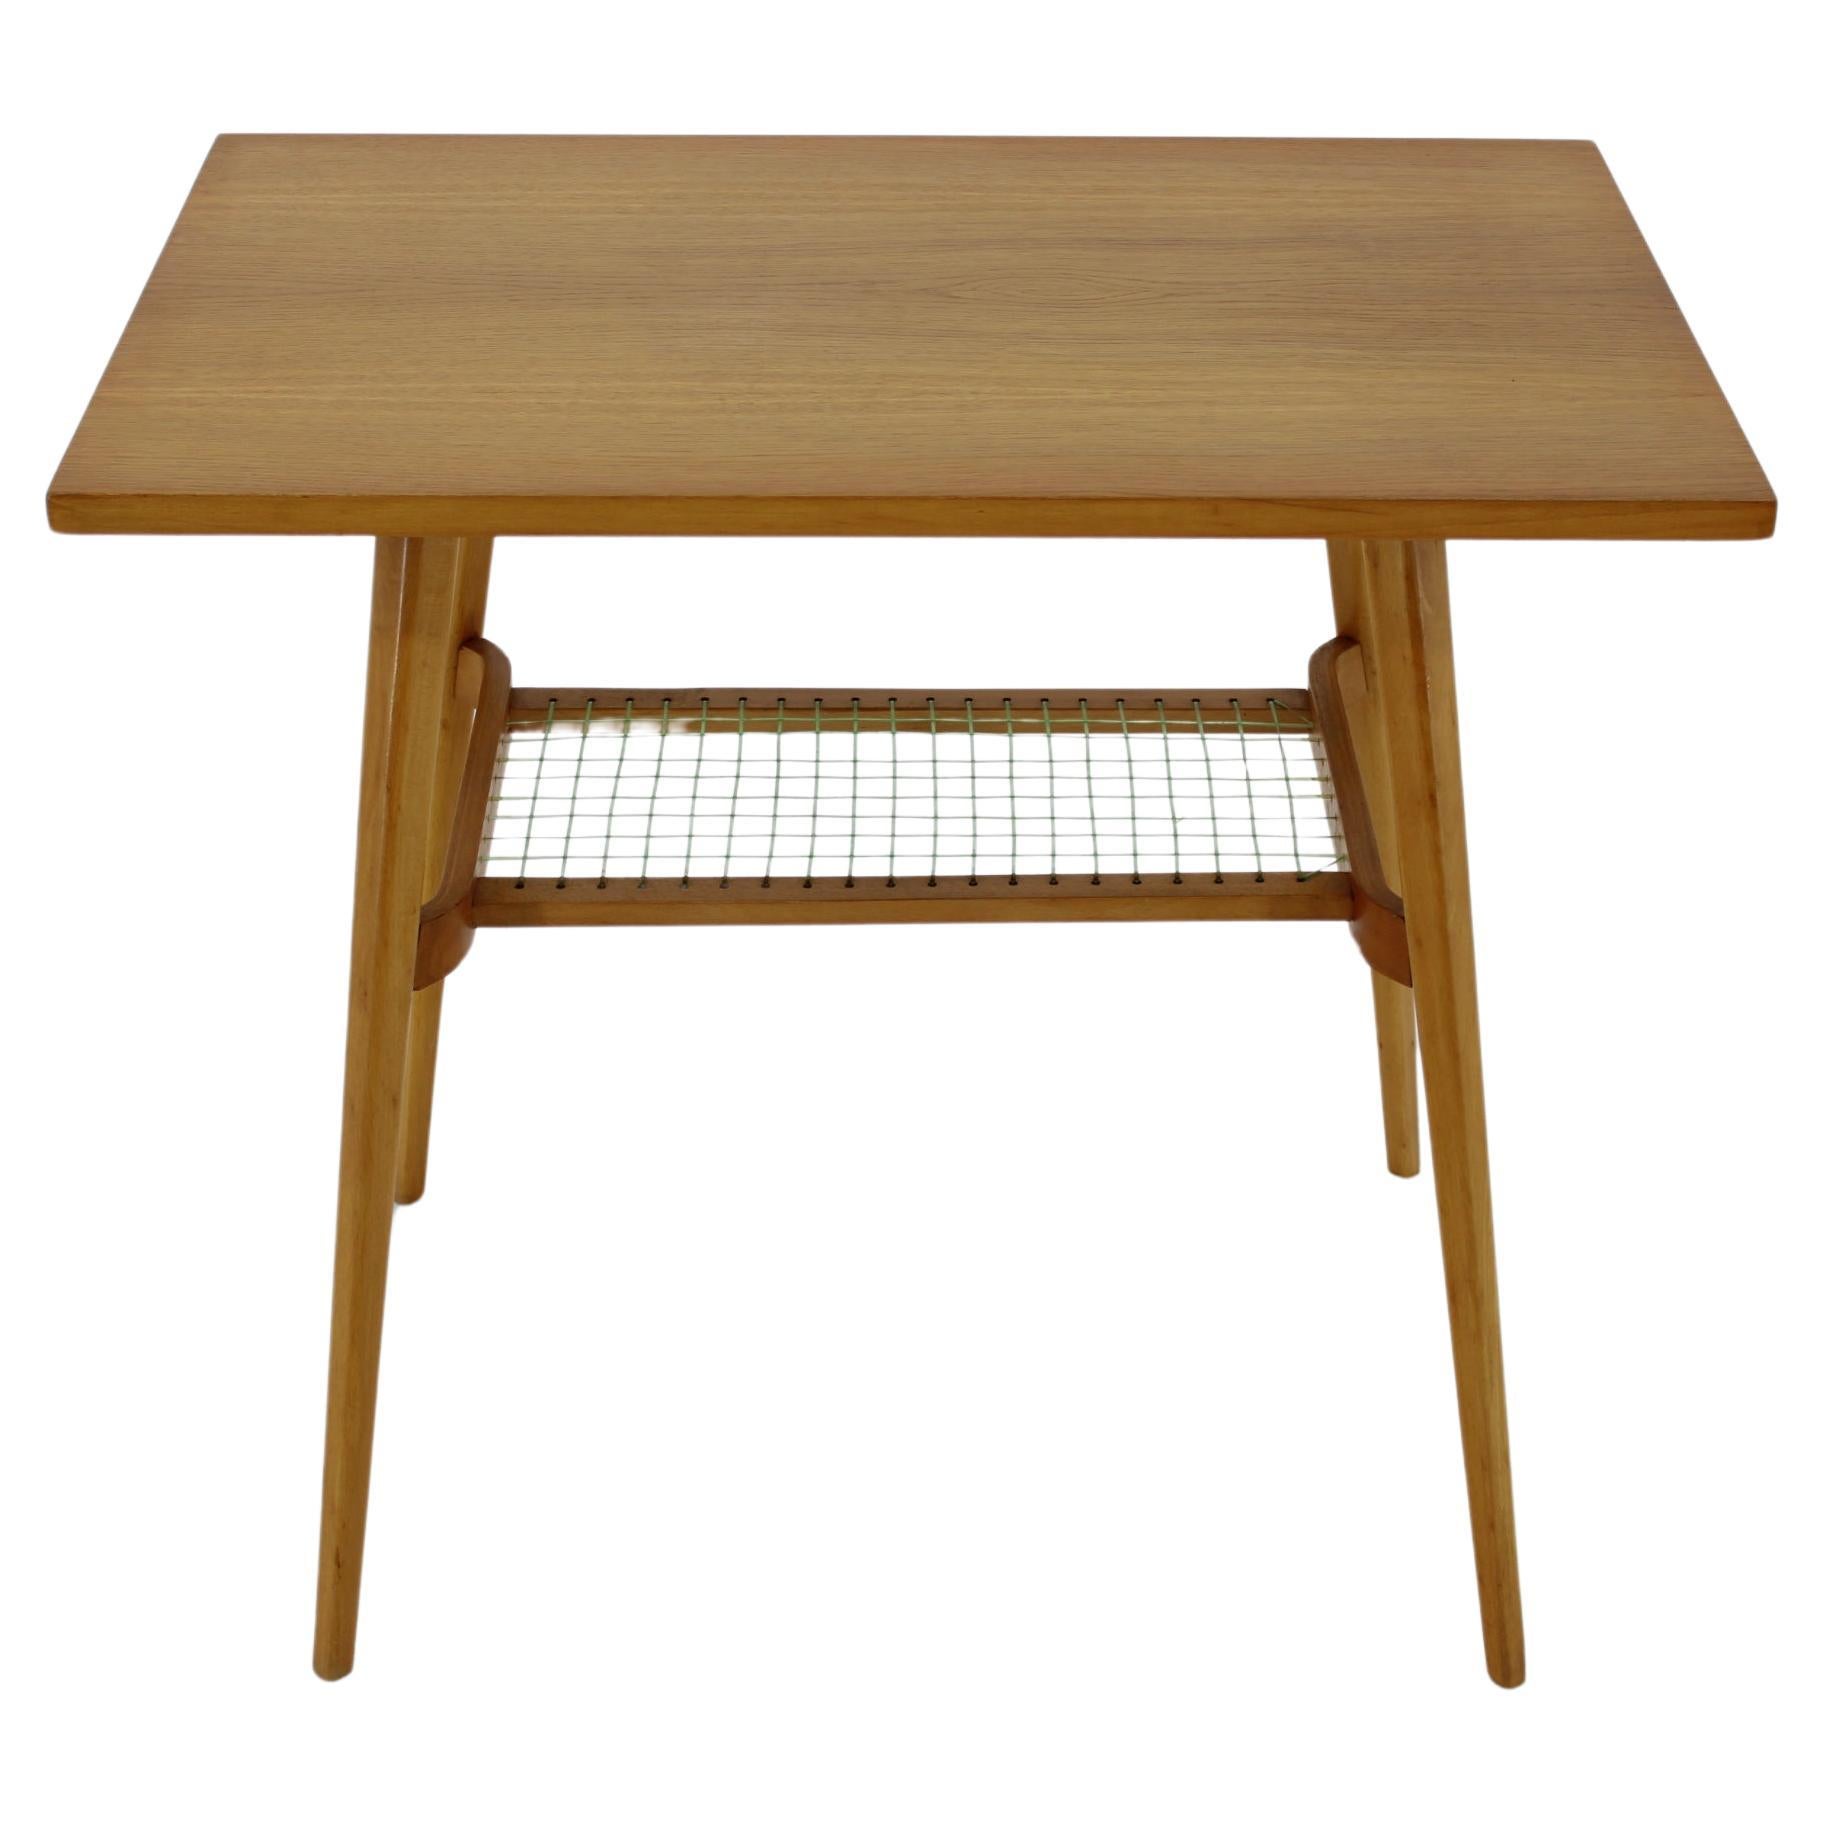 - beech legs and veneered top desk with oak veneer 
- good /very good original condition 